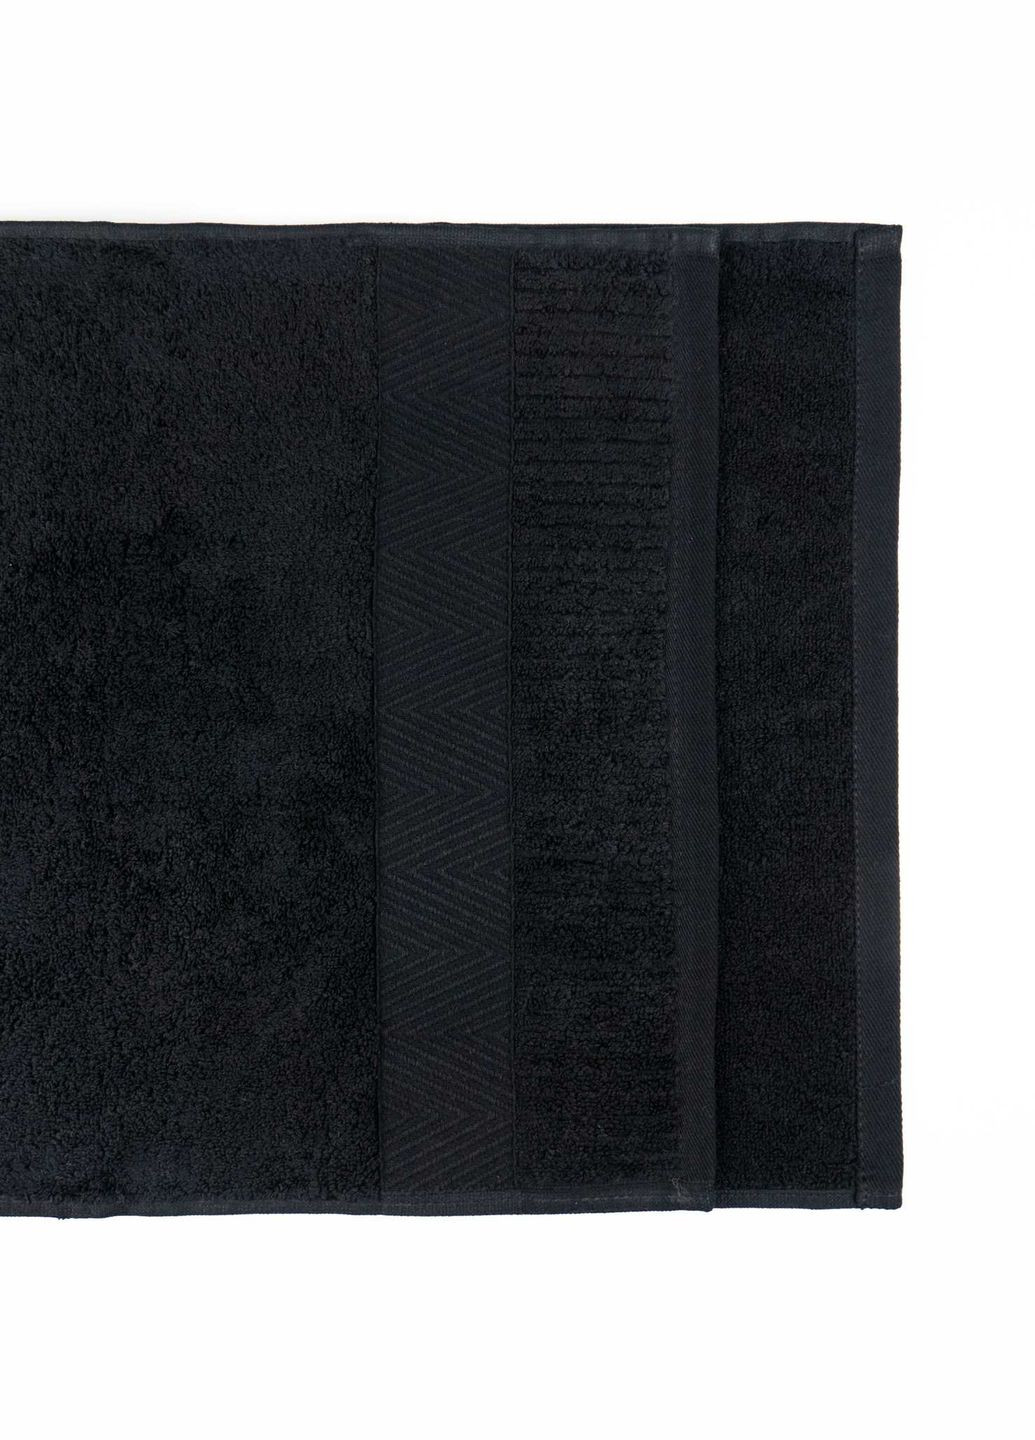 GM Textile банний махровий рушник 70x140см преміум якості зеро твіст бордюр 550г/м2 (чорний) чорний виробництво -